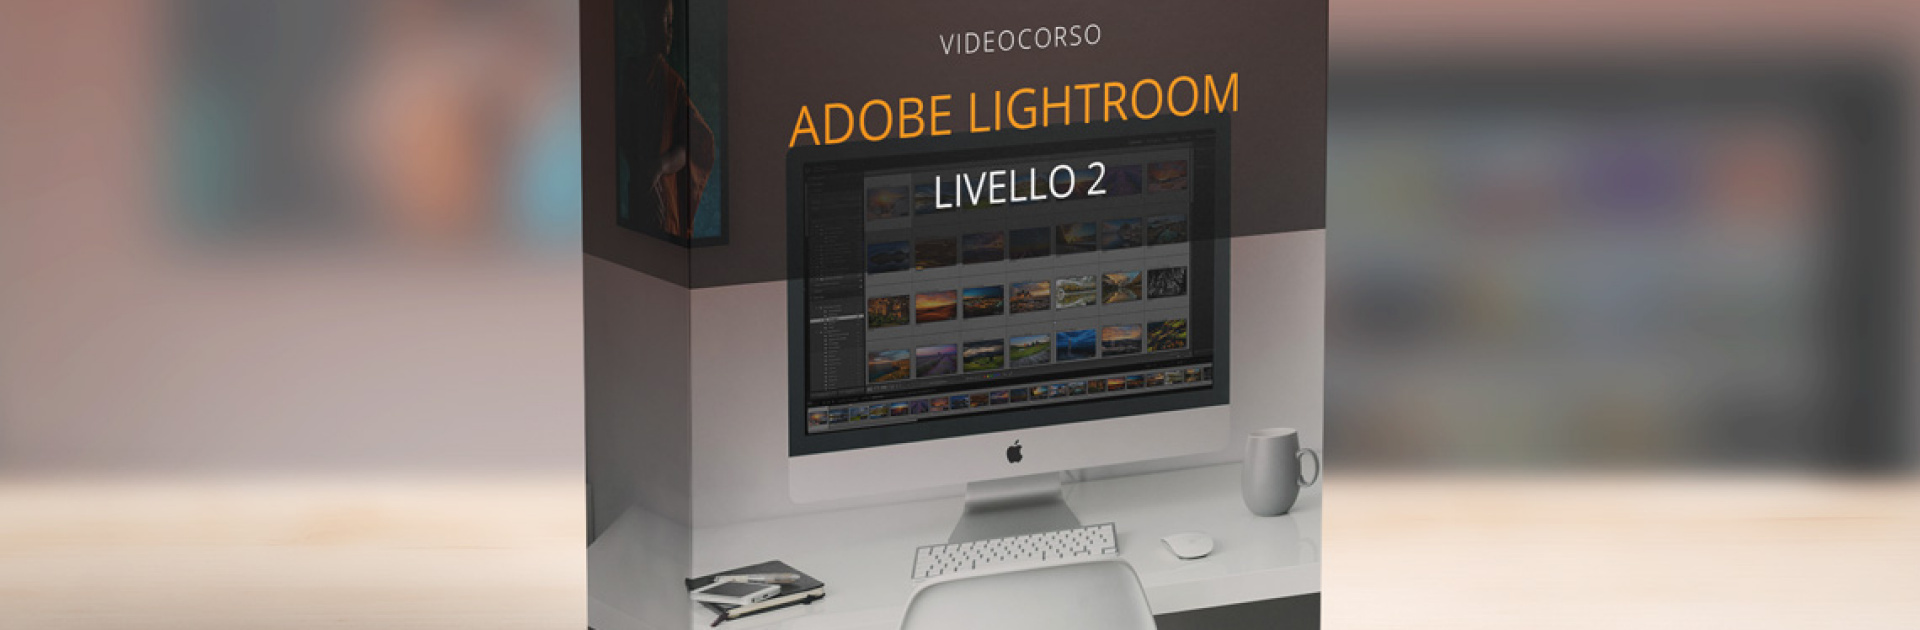 Adobe Lightroom Liv. 2 - Strumenti Avanzati Di Sviluppo E Libreria